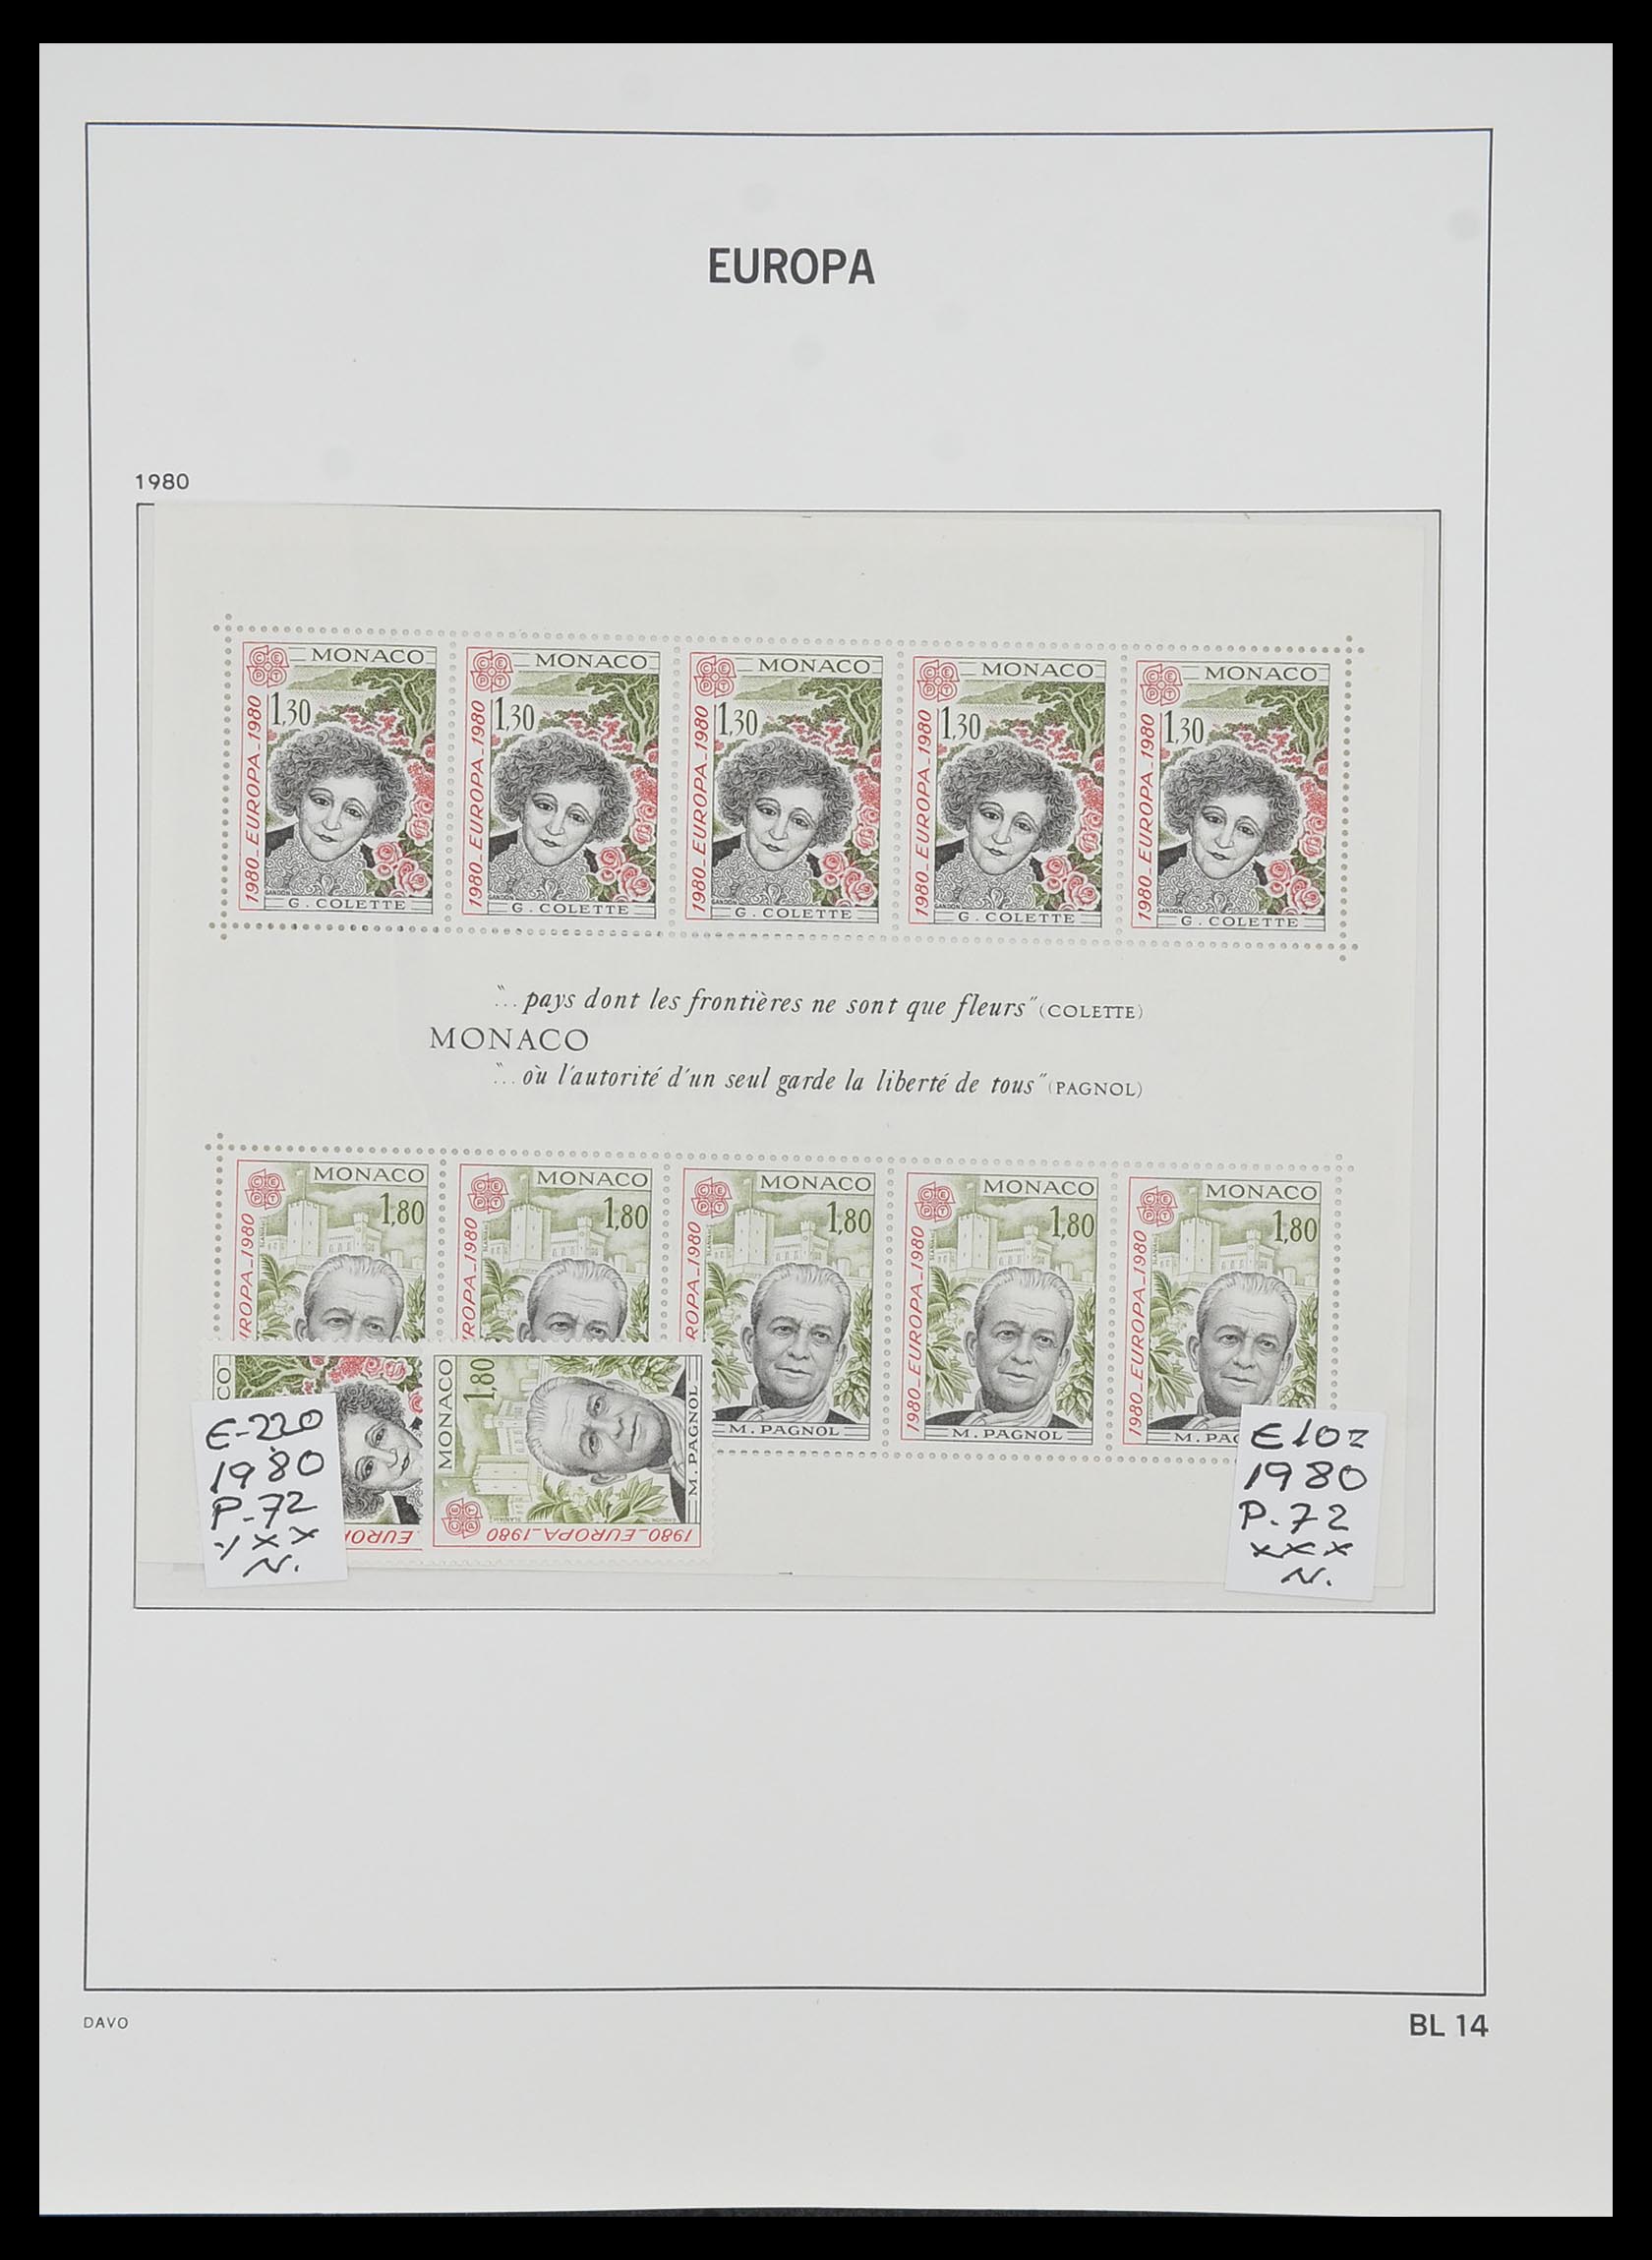 33985 014 - Stamp collection 33985 Europa CEPT souvenir sheets 1974-2014.